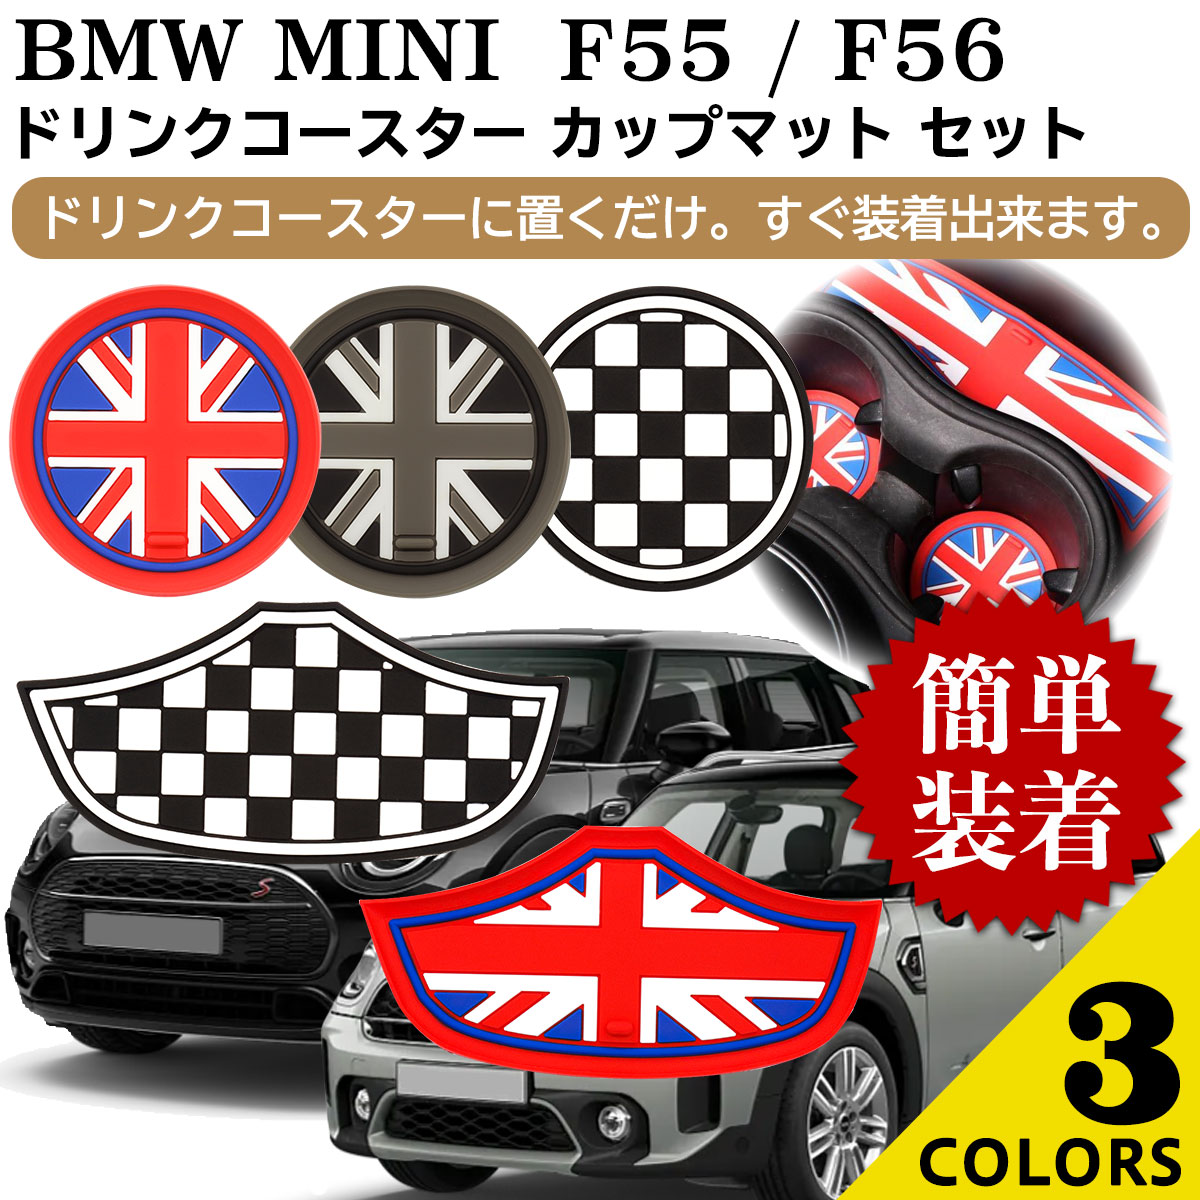 BMW MINI ミニクーパー コースター F55 F56 アクセサリー カスタム